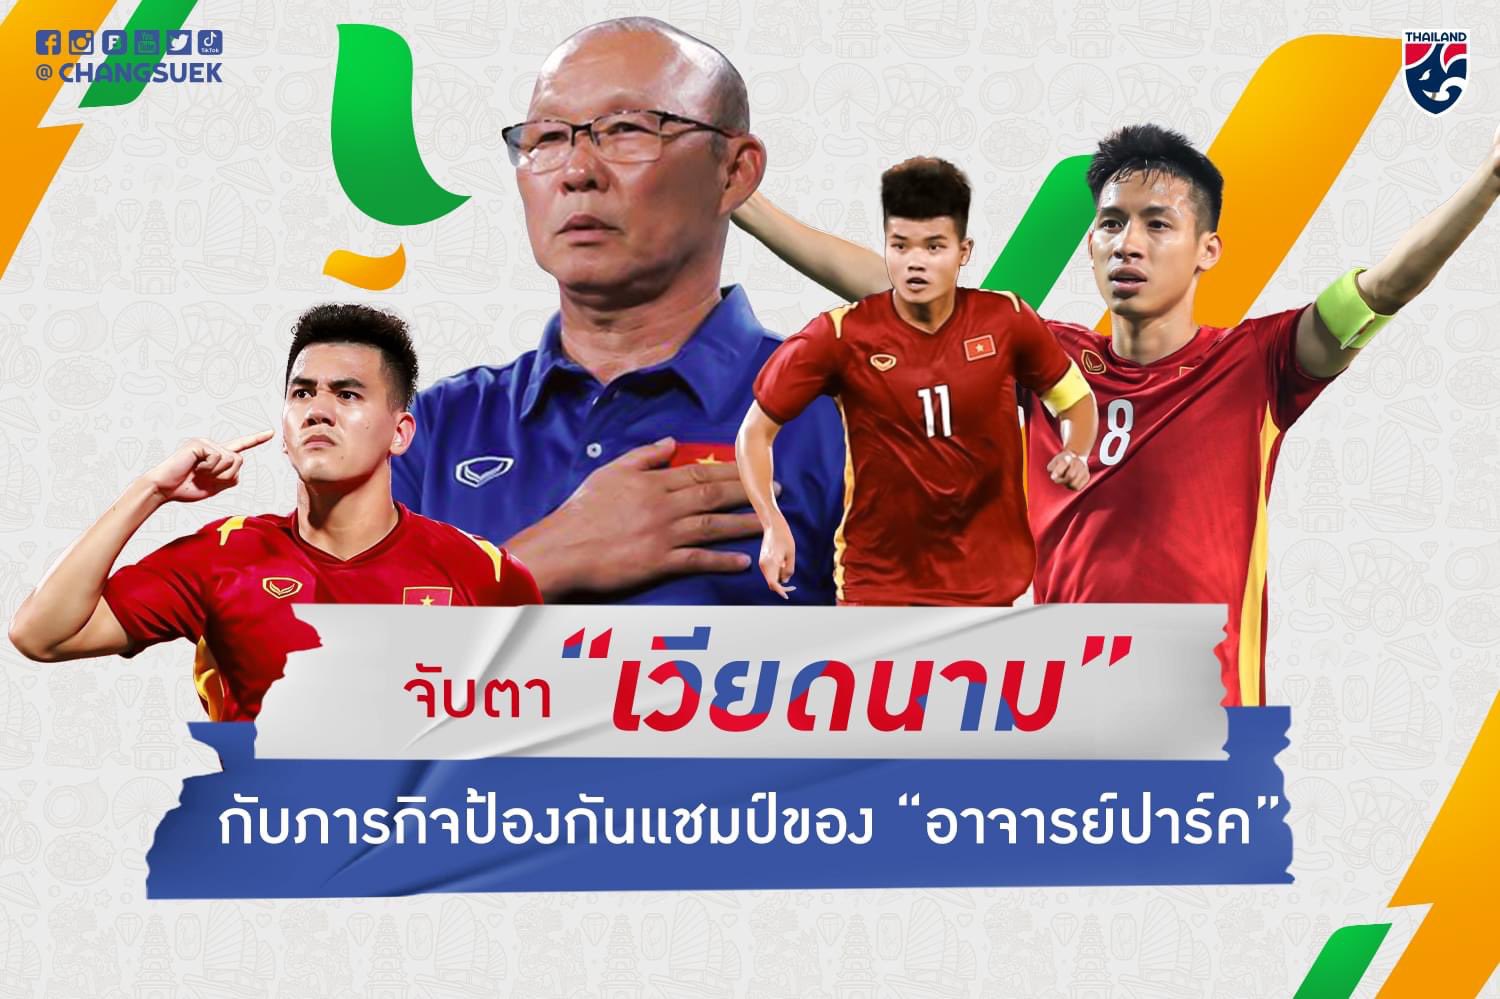 Hãy cùng chiêm ngưỡng hình ảnh đội tuyển LĐBĐ Thái Lan với phong cách chơi bóng đầy khó nhằn, tinh thần đồng đội cùng sự cố gắng không ngừng nghỉ.